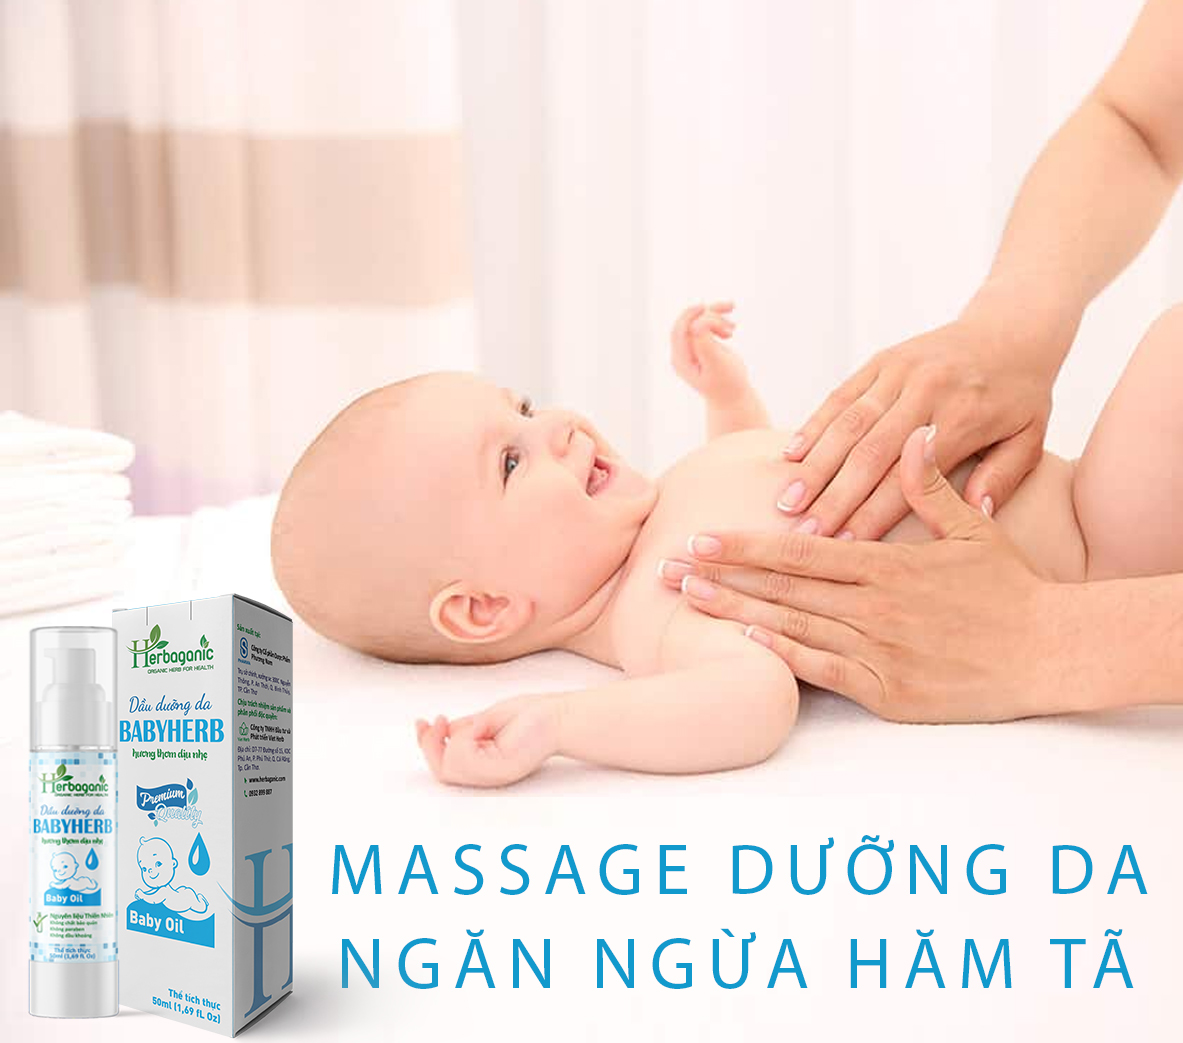 Tinh dầu dưỡng ẩm da em bé Herbaganic BabyHerb 50ml - Massage ngừa hăm tã, hương thơm dịu nhẹ, an toàn cho bé